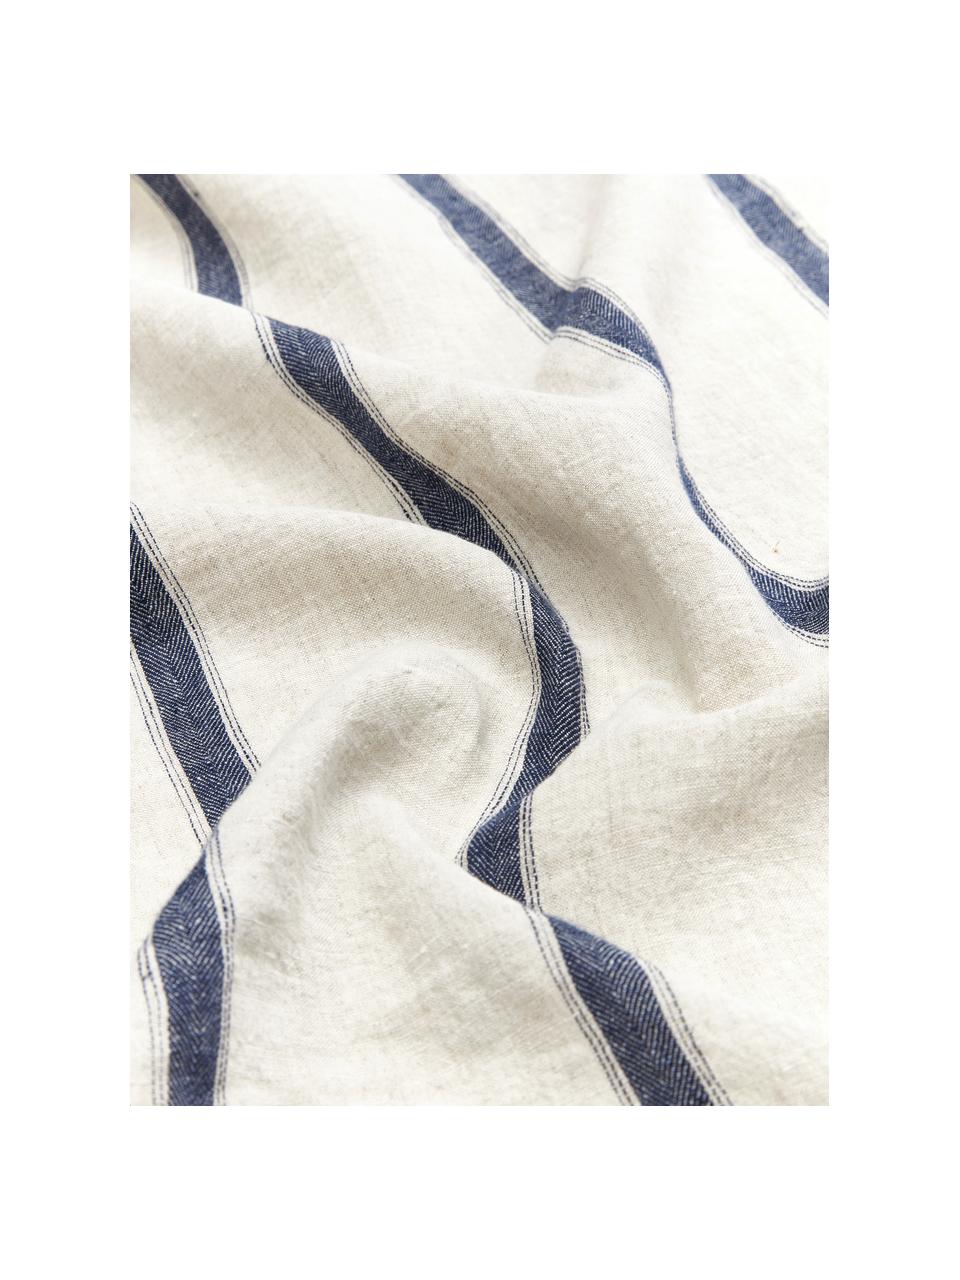 Gestreept linnen tafelkleed Karla in beige/blauw, 100% linnen, Gebroken wit, blauw, Voor 6 - 8 personen (B 145 x L 250 cm)